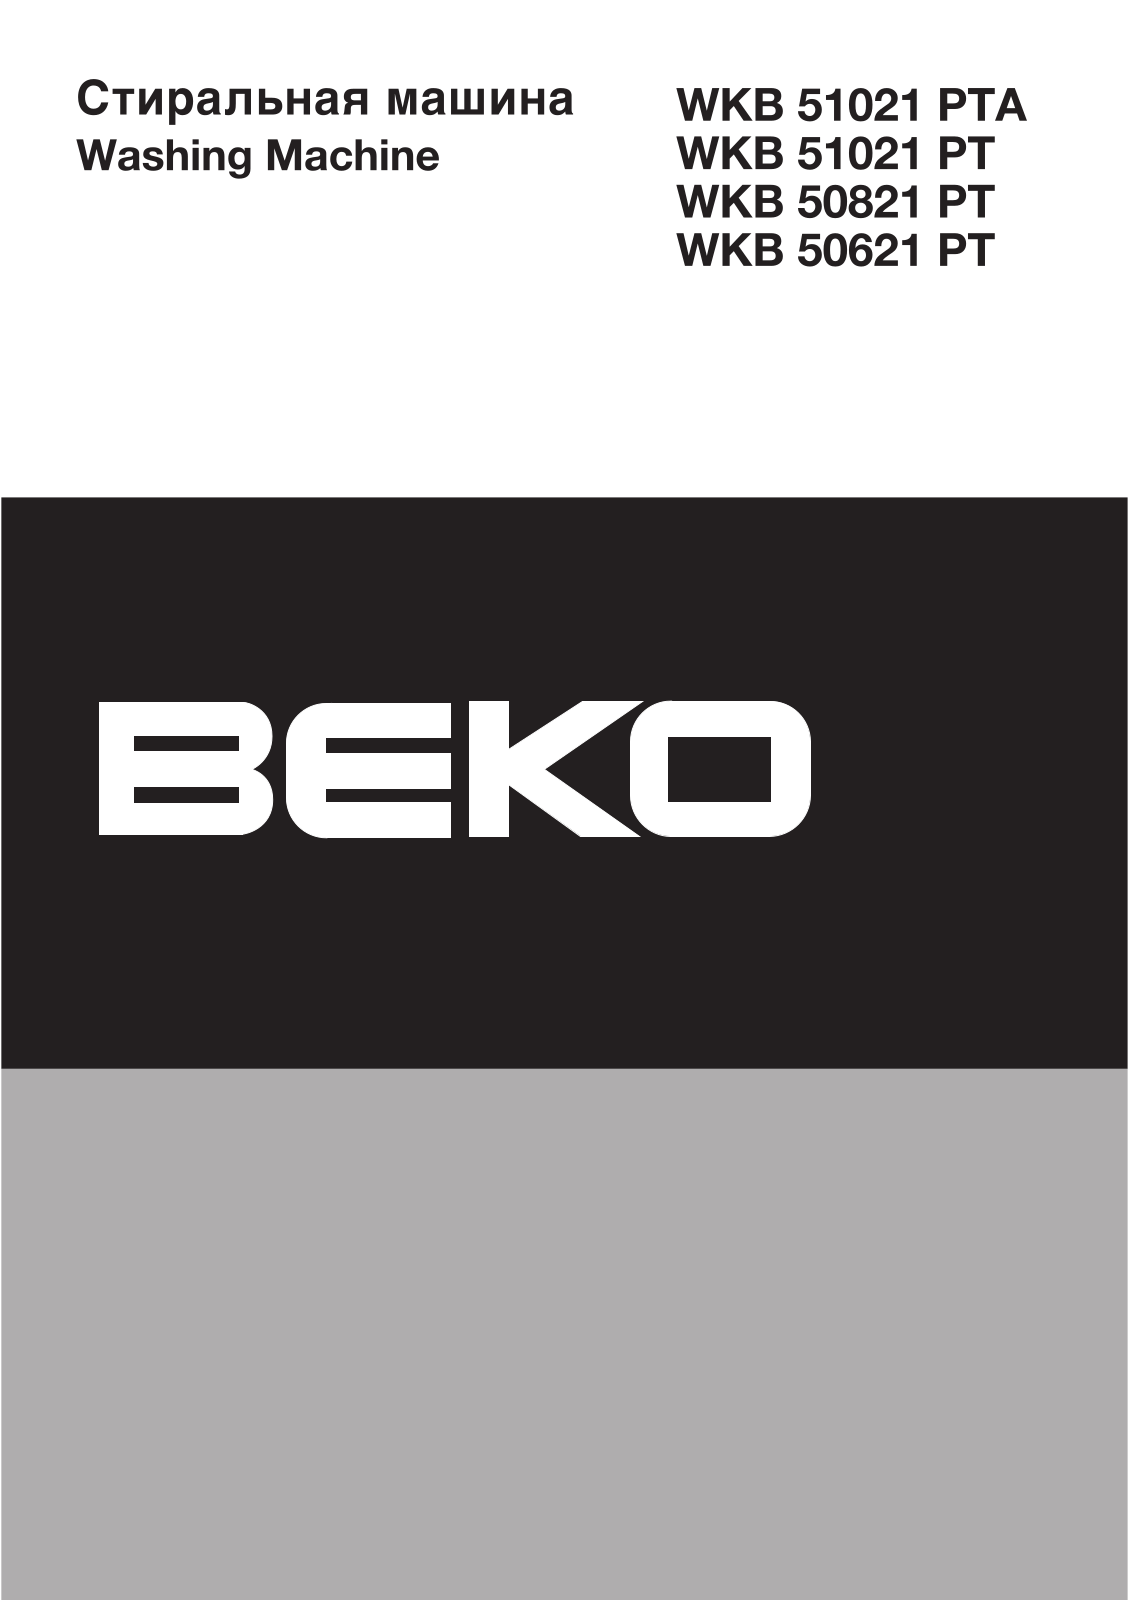 Beko WKB 51021 PTA User Manual